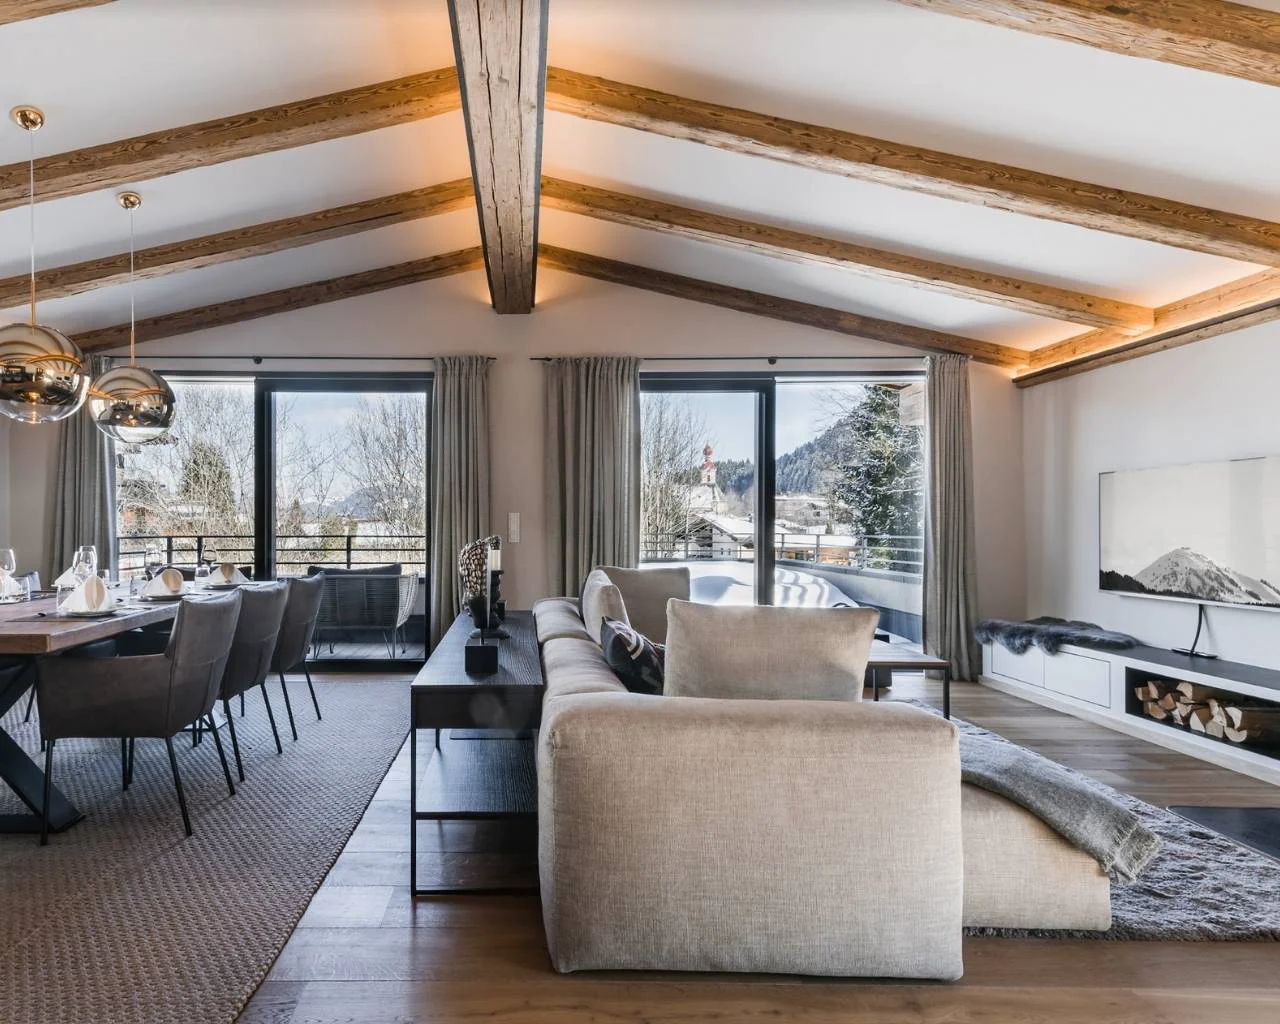 Elegantes Wohn-/Esszimmer mit direktem Zugang zum Balkon und Aussicht auf die Berge. Sichtbare, passive beleuchtete Dachbalken. Interior Design in Holz und Grautönen.